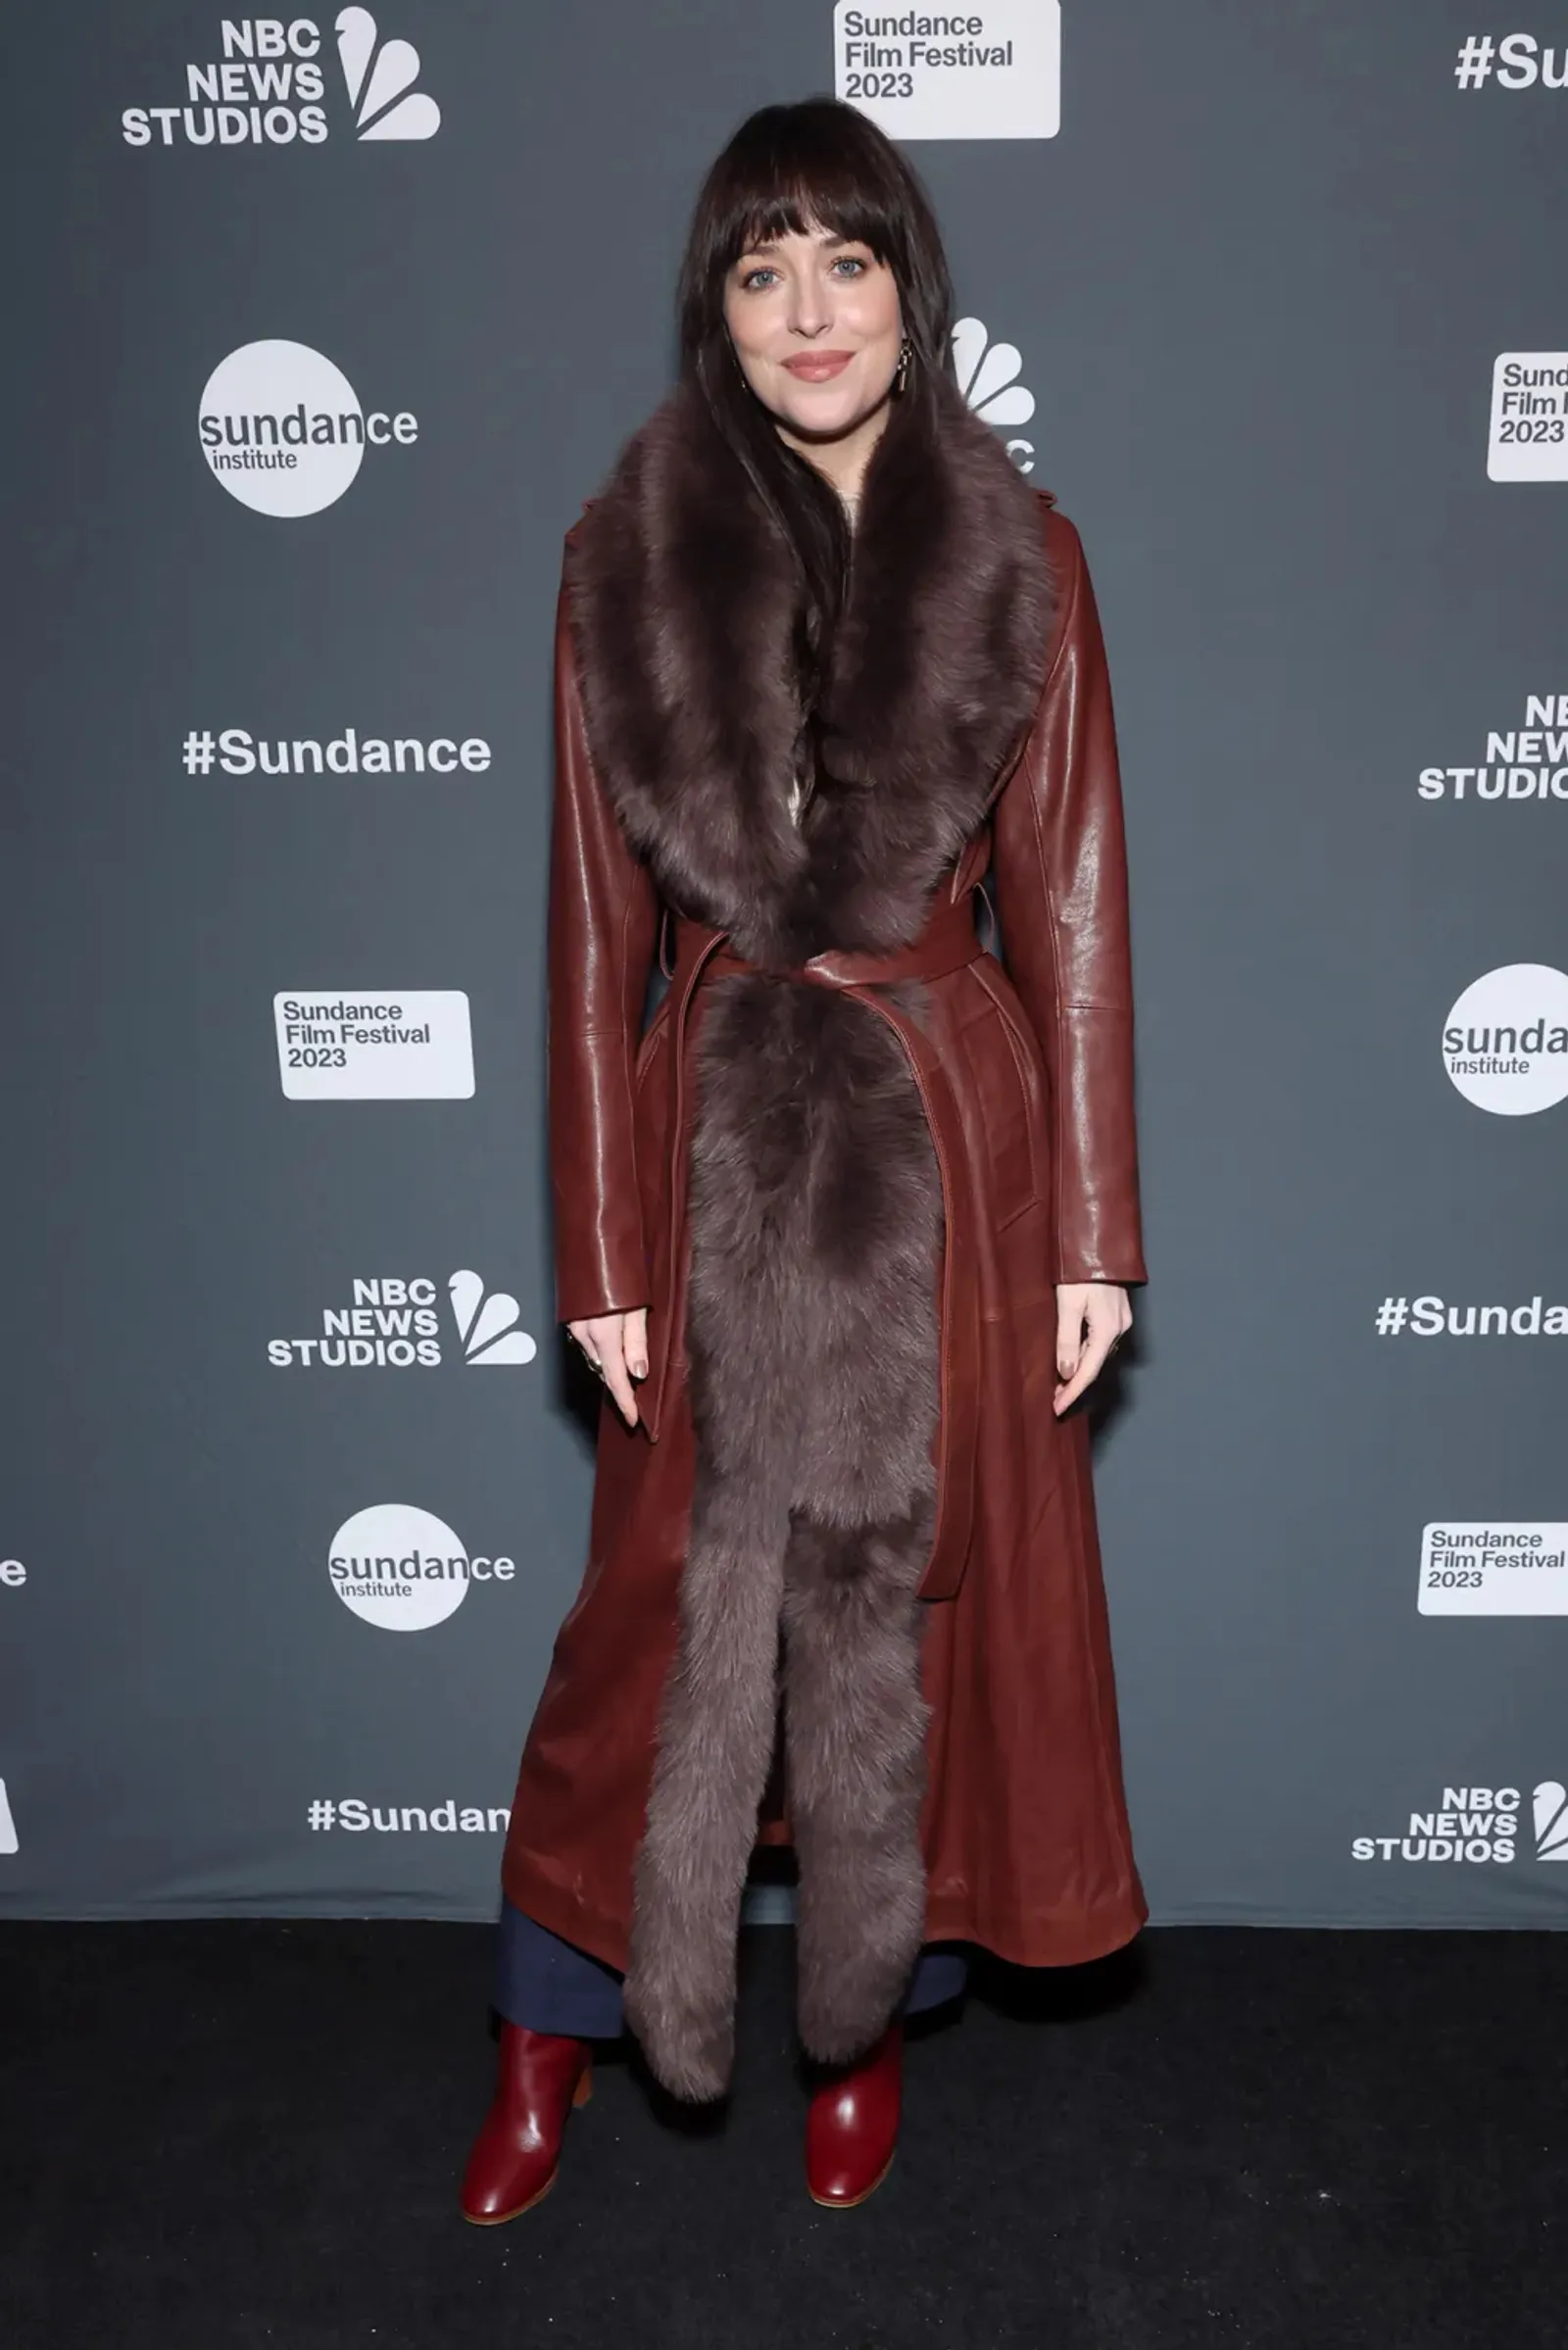 Deretan Gaya Modis Dakota Johnson Pakai Outer di Sundance 2023